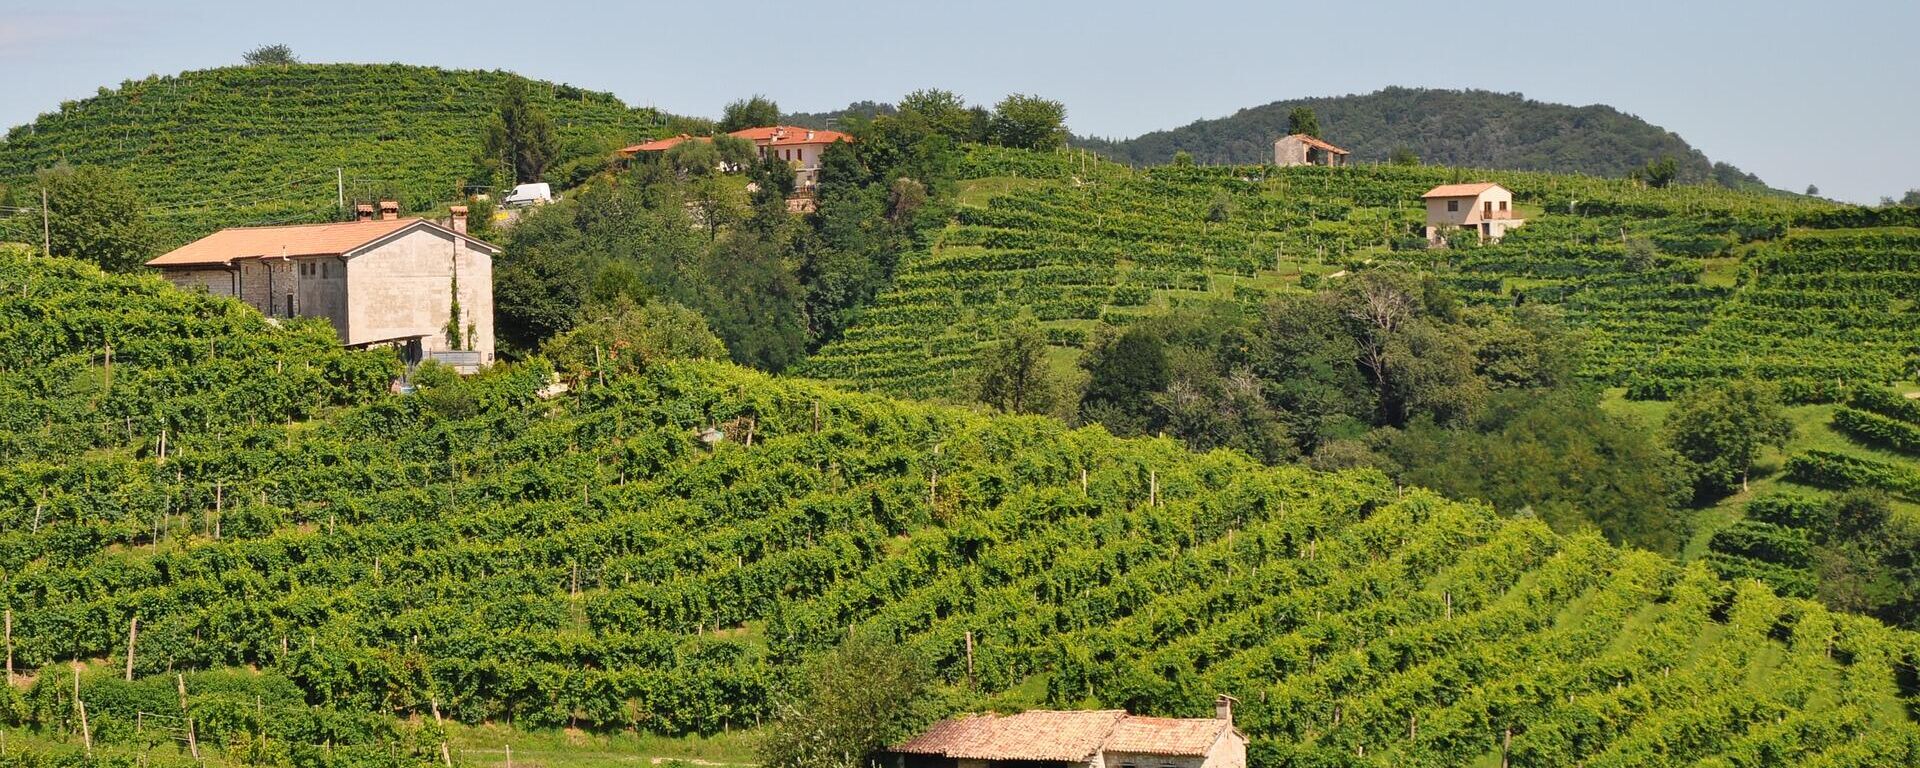 Vinograd u severnoj Italiji u kom se proizvodi tradicionalno vino proseko - Sputnik Srbija, 1920, 15.09.2021